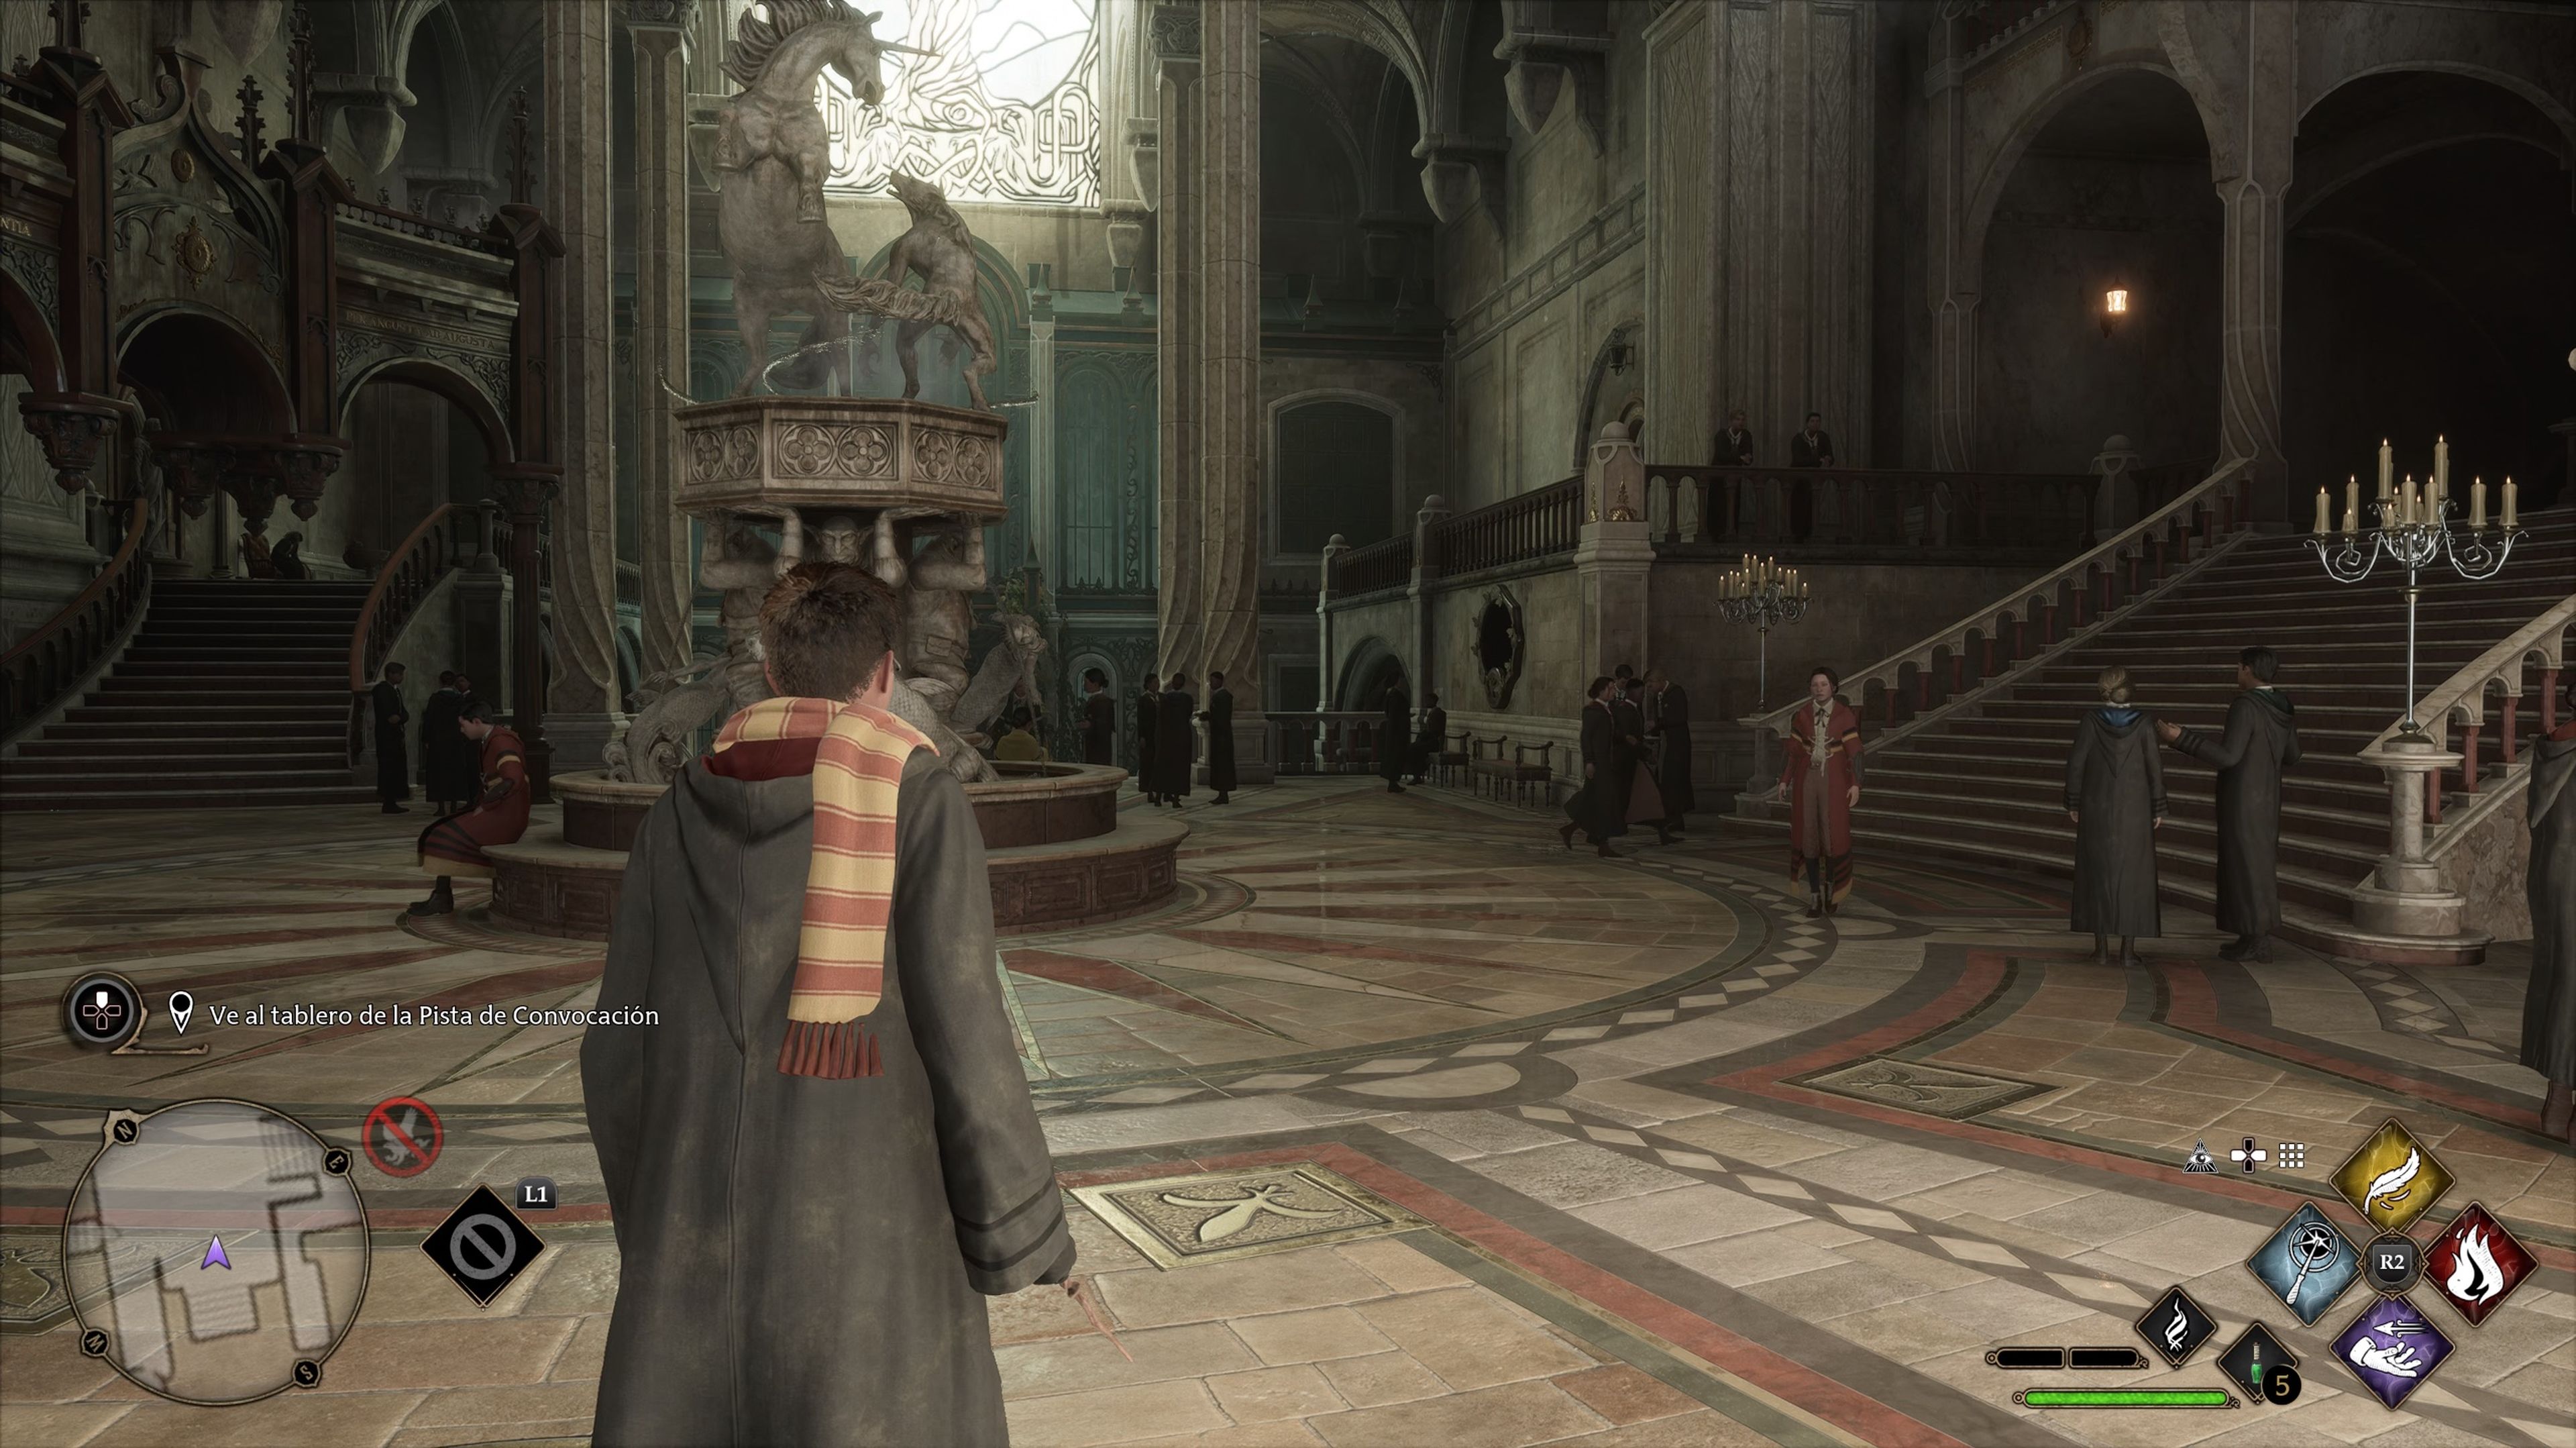 Hogwarts Legacy' desvela un gameplay que muestra el castillo y